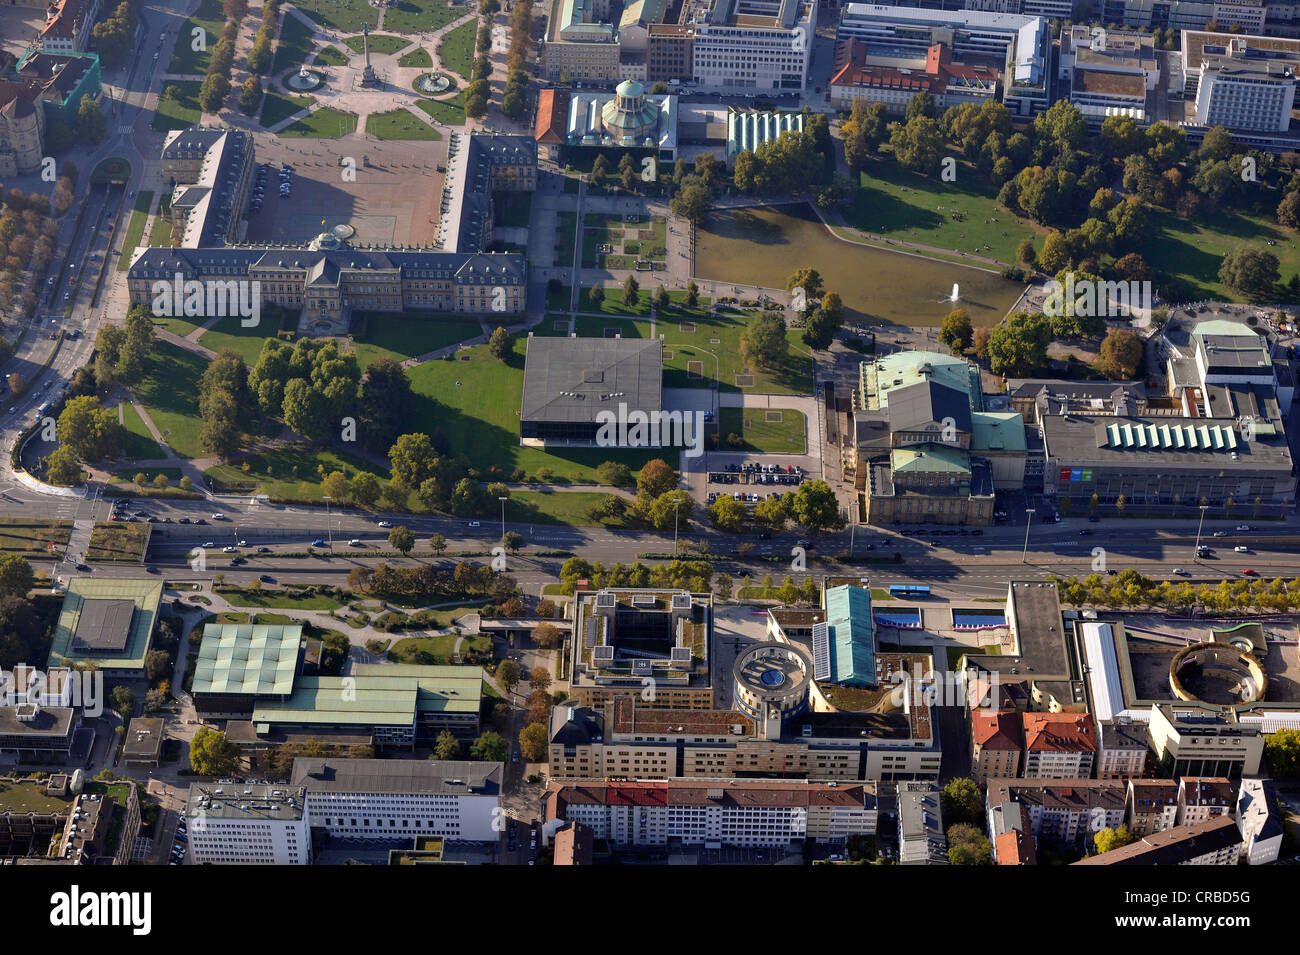 Vista aerea, Kulturmeile Stoccarda complesso con opera house, Haus der Geschichte museum, accademia di musica Foto Stock